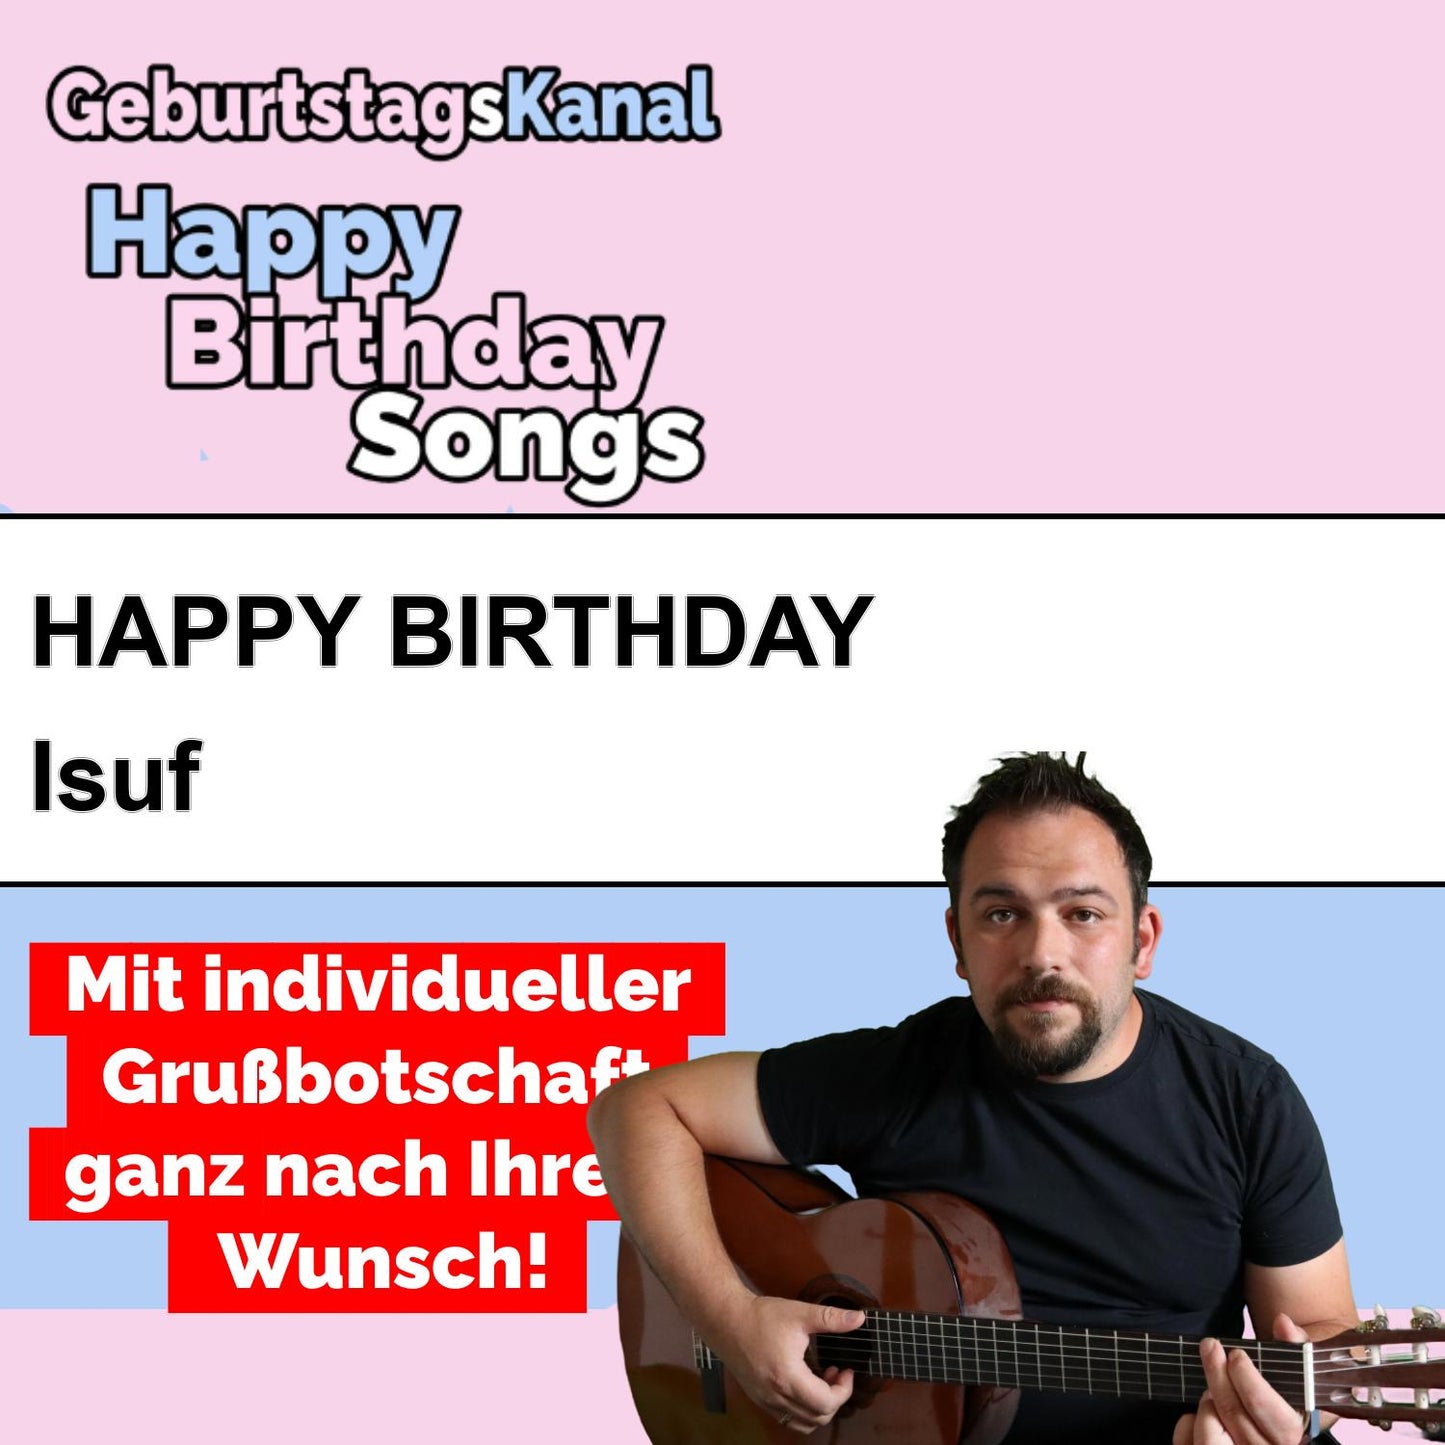 Produktbild Happy Birthday to you Isuf mit Wunschgrußbotschaft